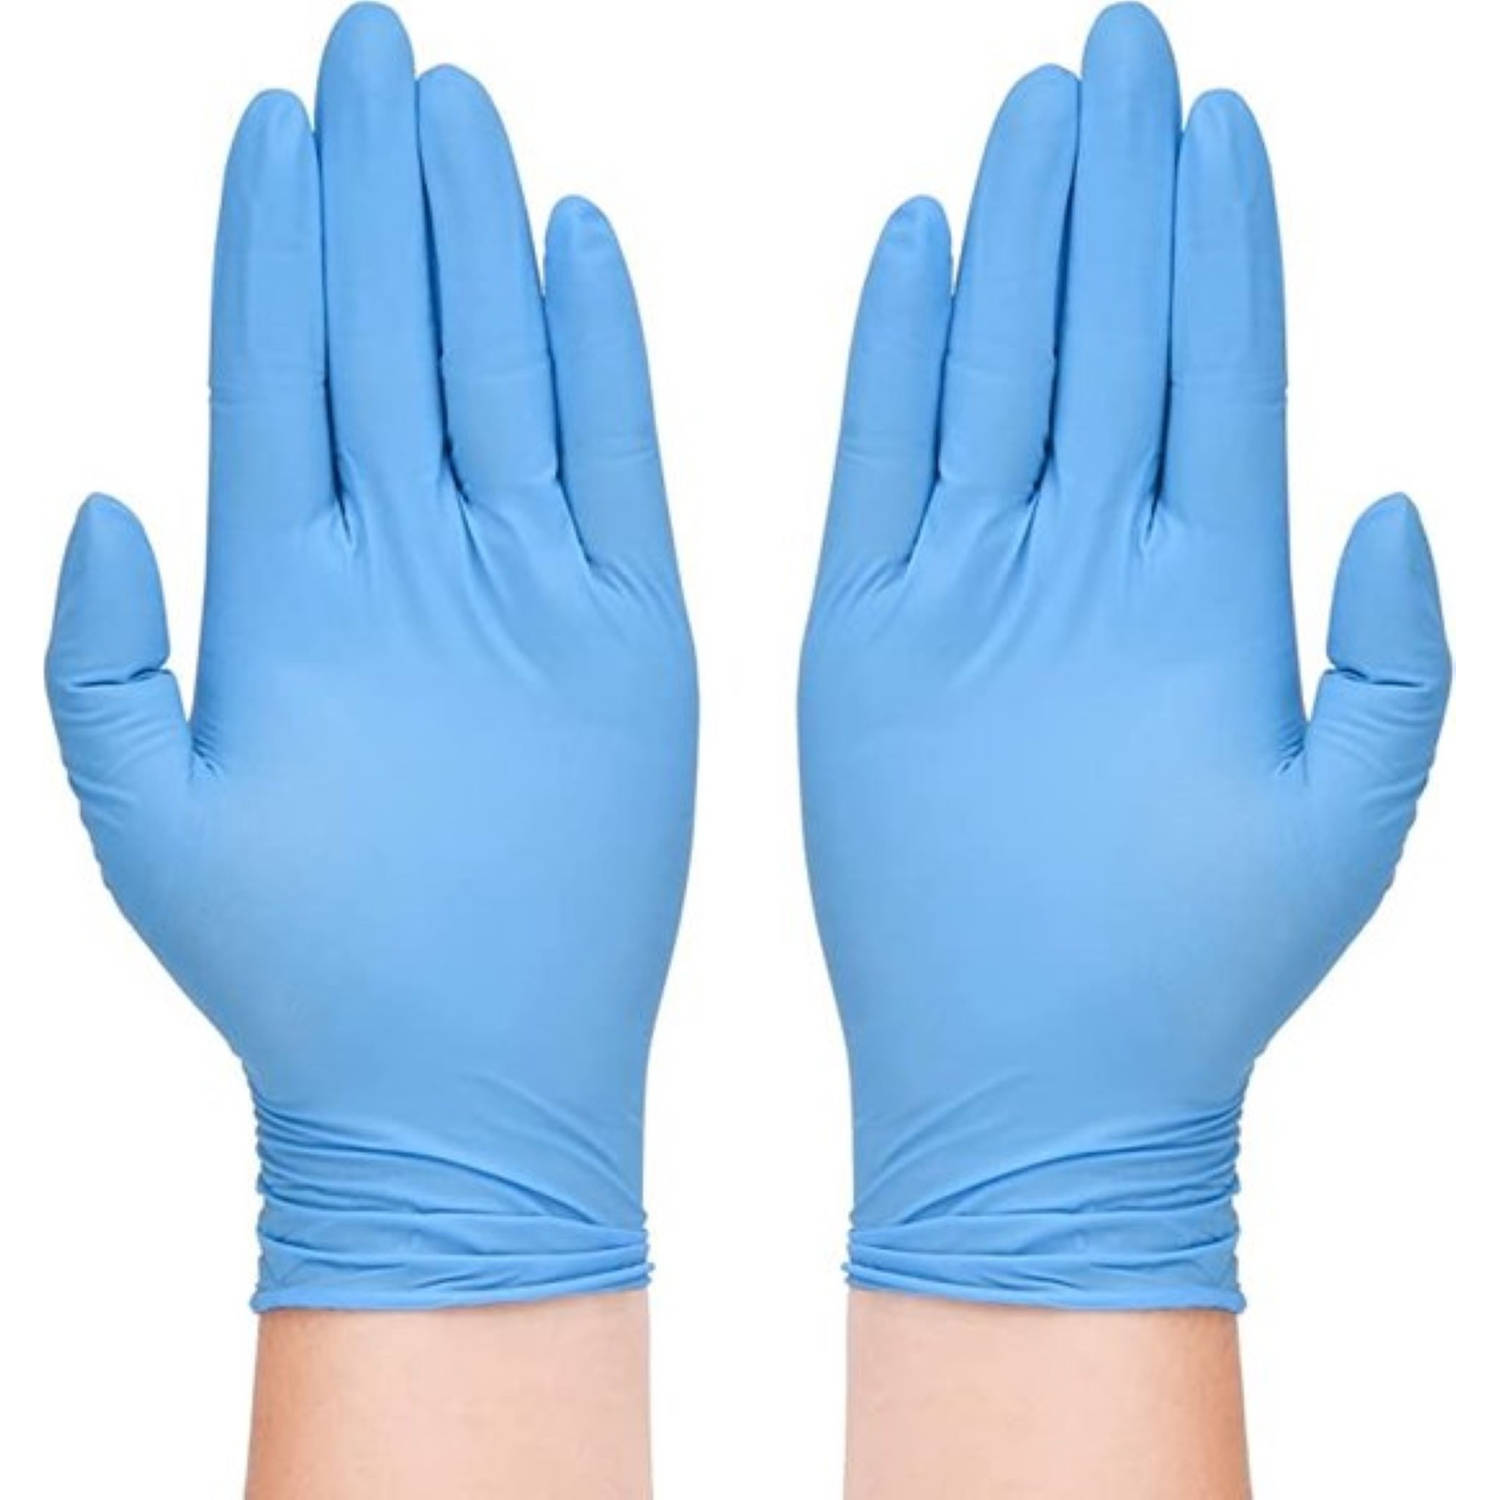 Dierbare Net zo Slapen Wegwerp handschoenen blauw 200 stuks - Nitril handschoenen - Poedervrij -  Blauw - maat S - Nitrile 200 stuks | Blokker